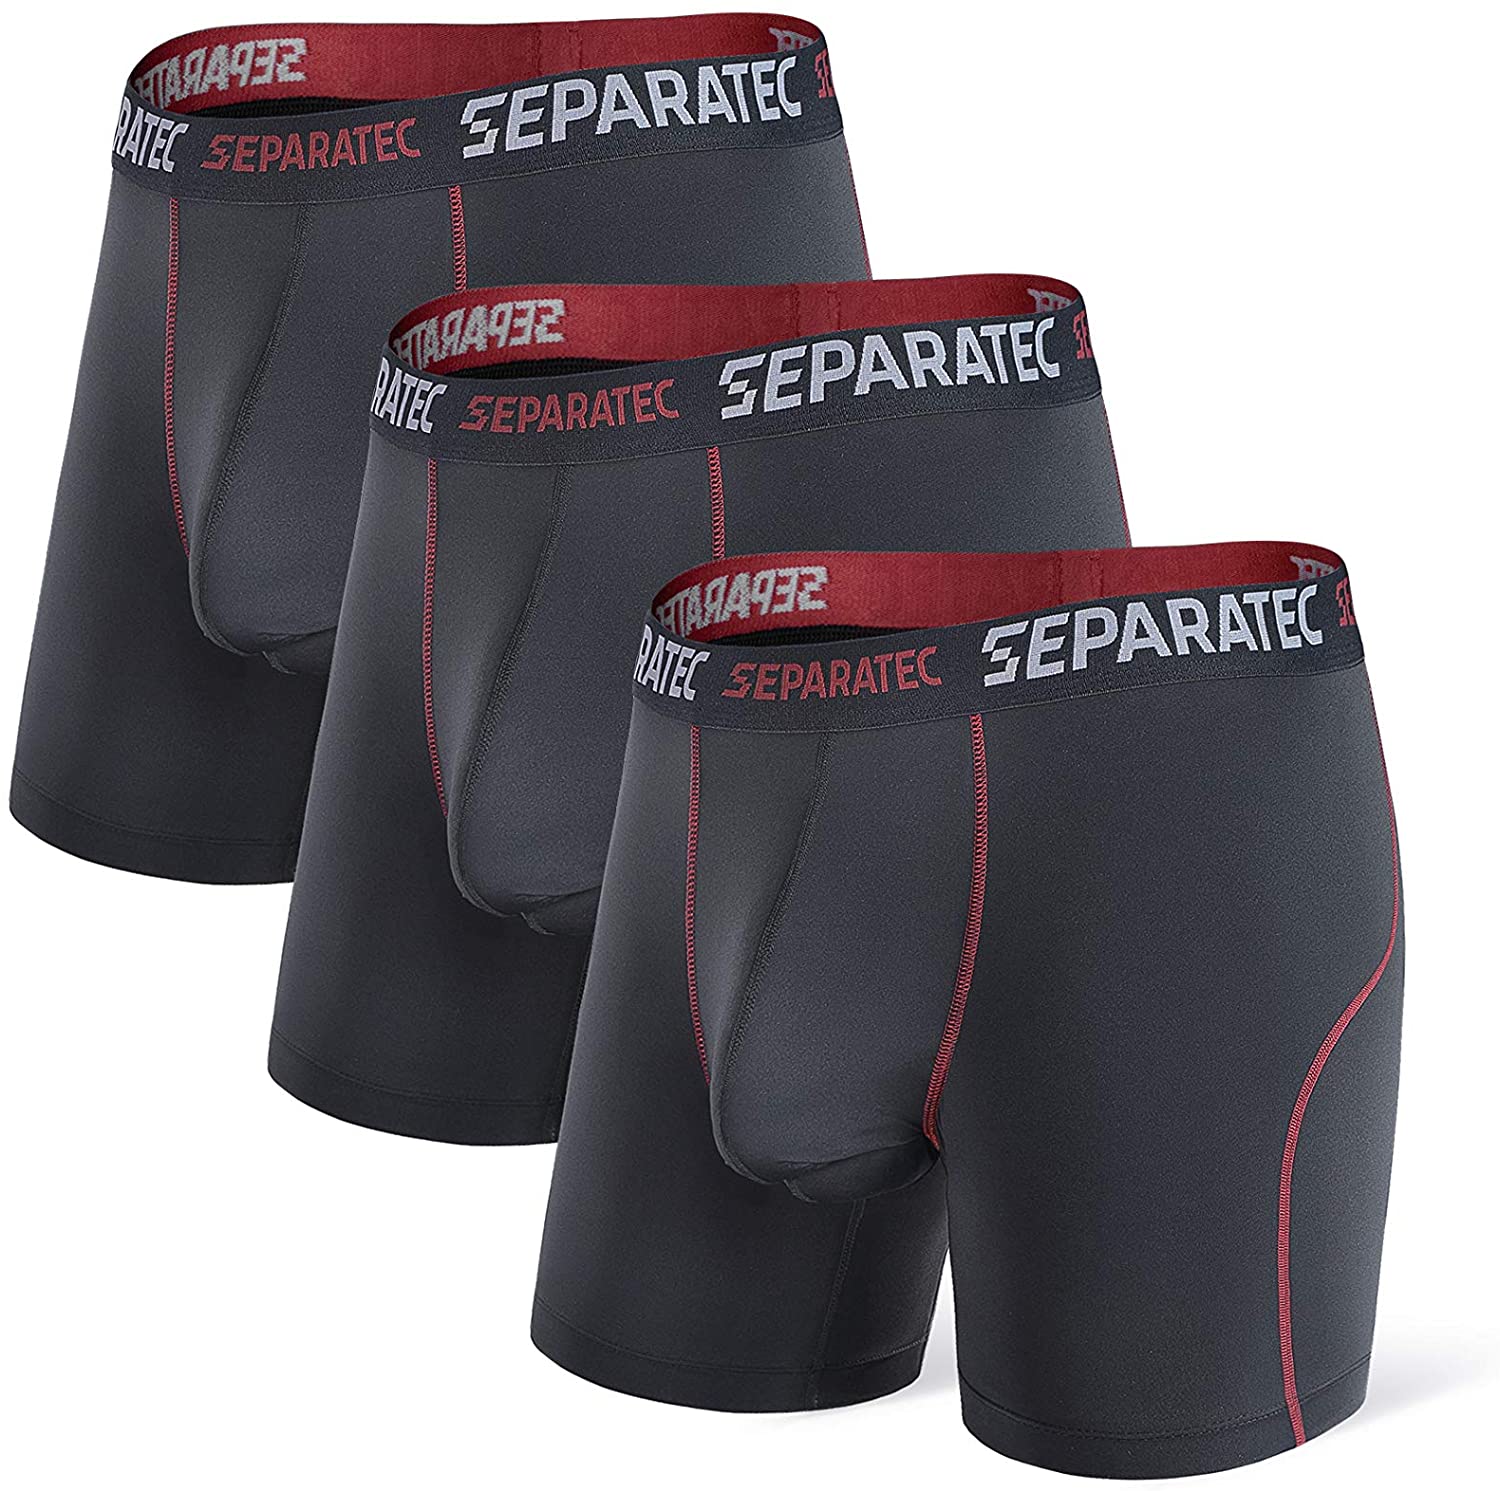 Buy Separatec Men's Underwear Multipack Classic Fit Cotton Dual Pouch Briefs  3 Pack Online at desertcartCyprus